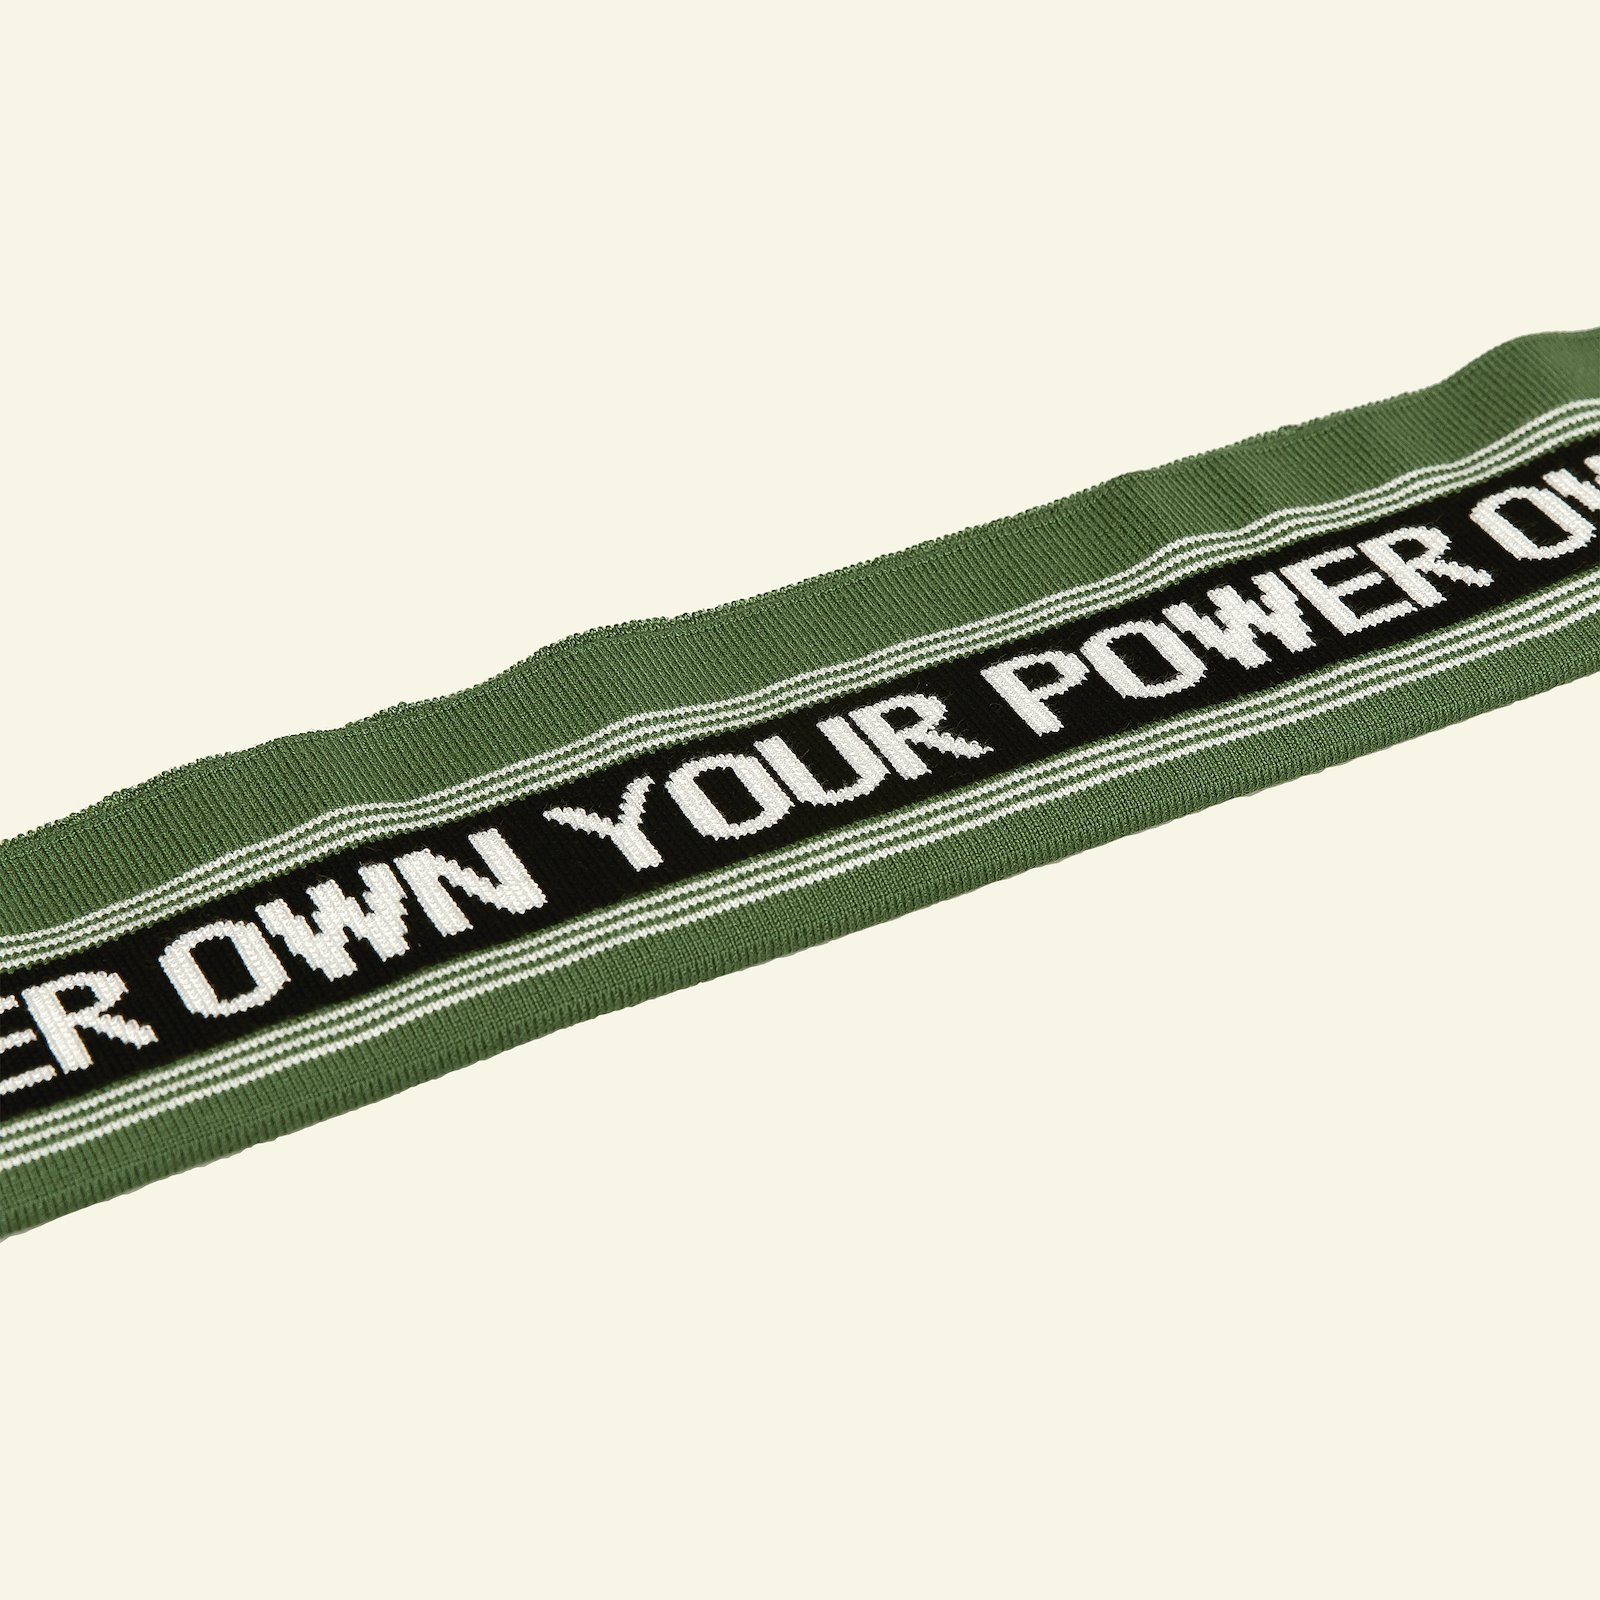 1x1 rib fold 14x100cm green 1pc, "OWN YOUR POWER". 96189_pack_b